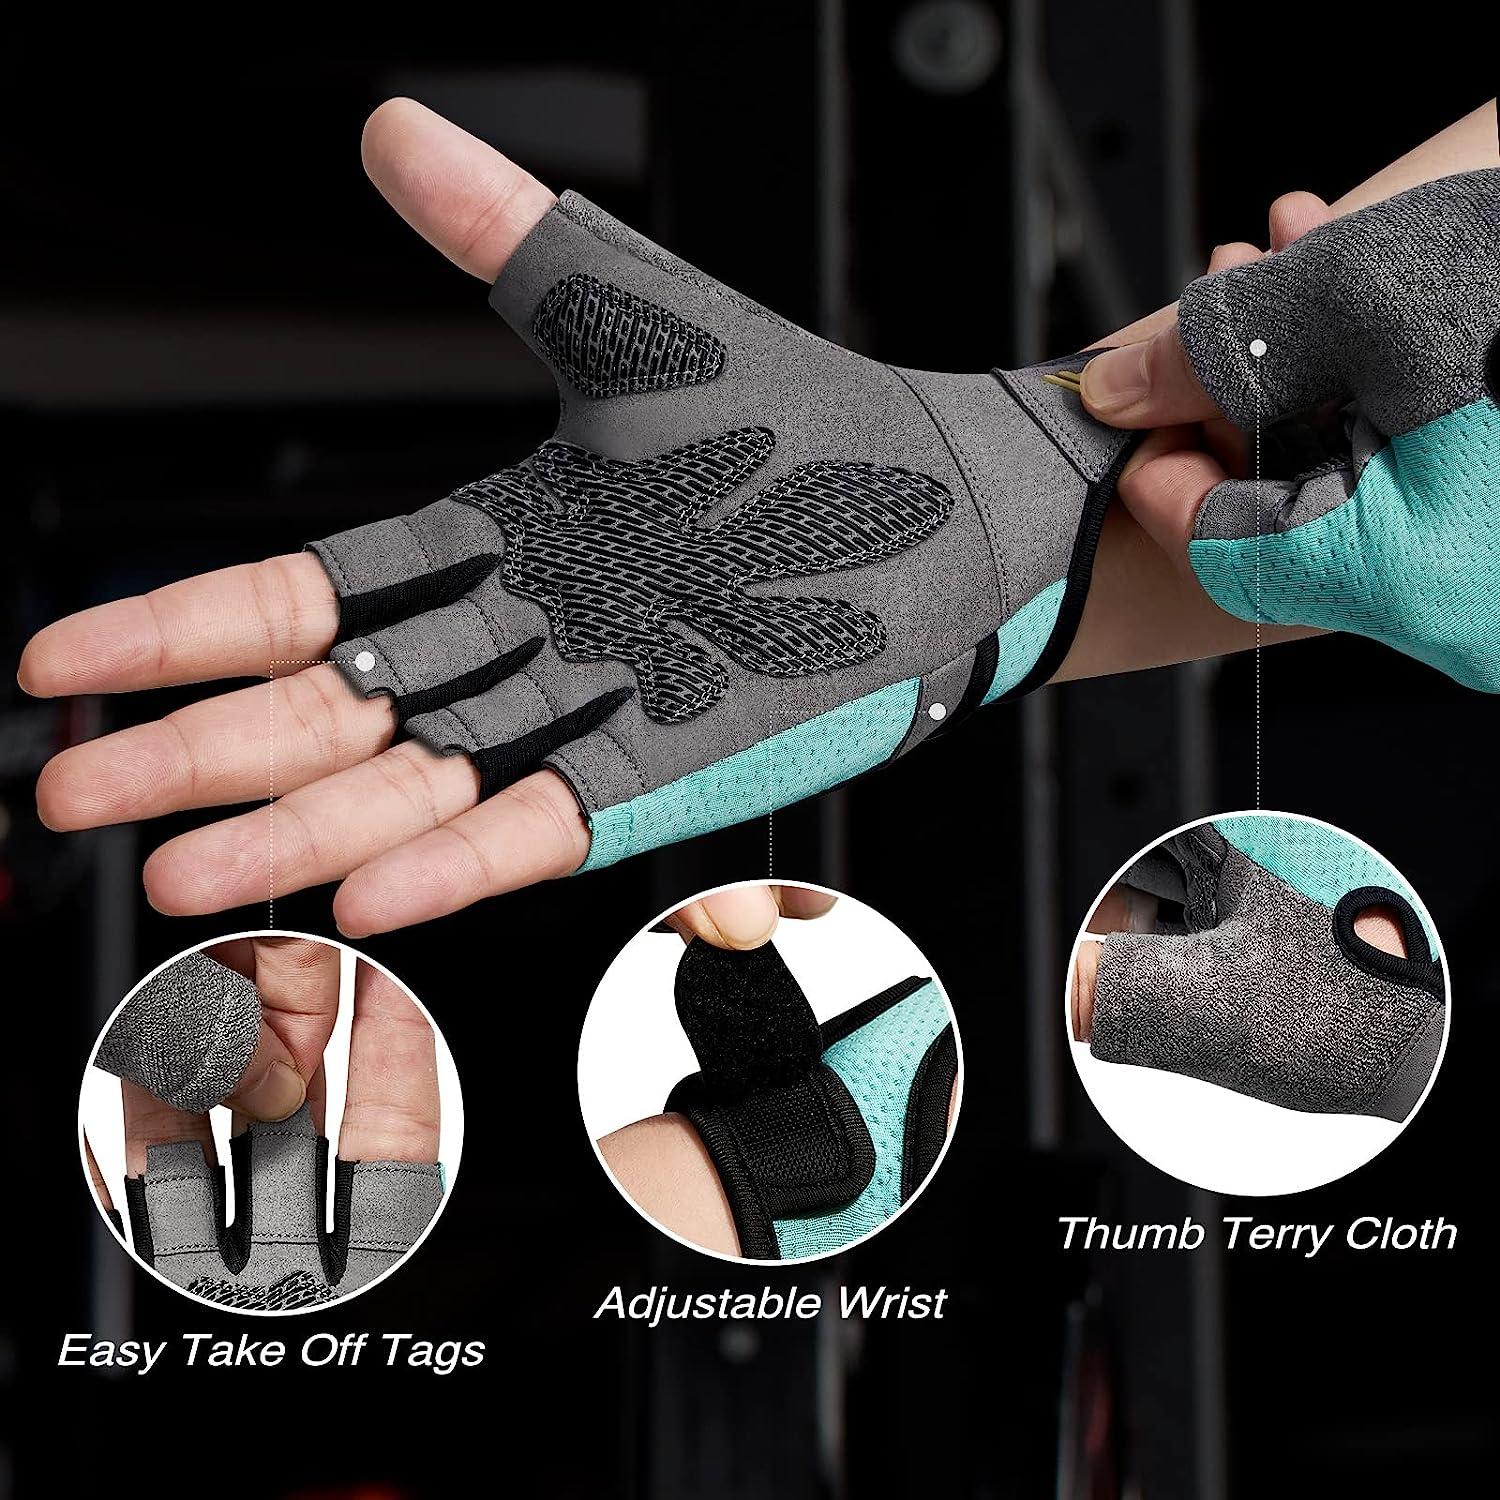 Glofit Workout Gloves for Women Men, Lightweight Weight Lifting